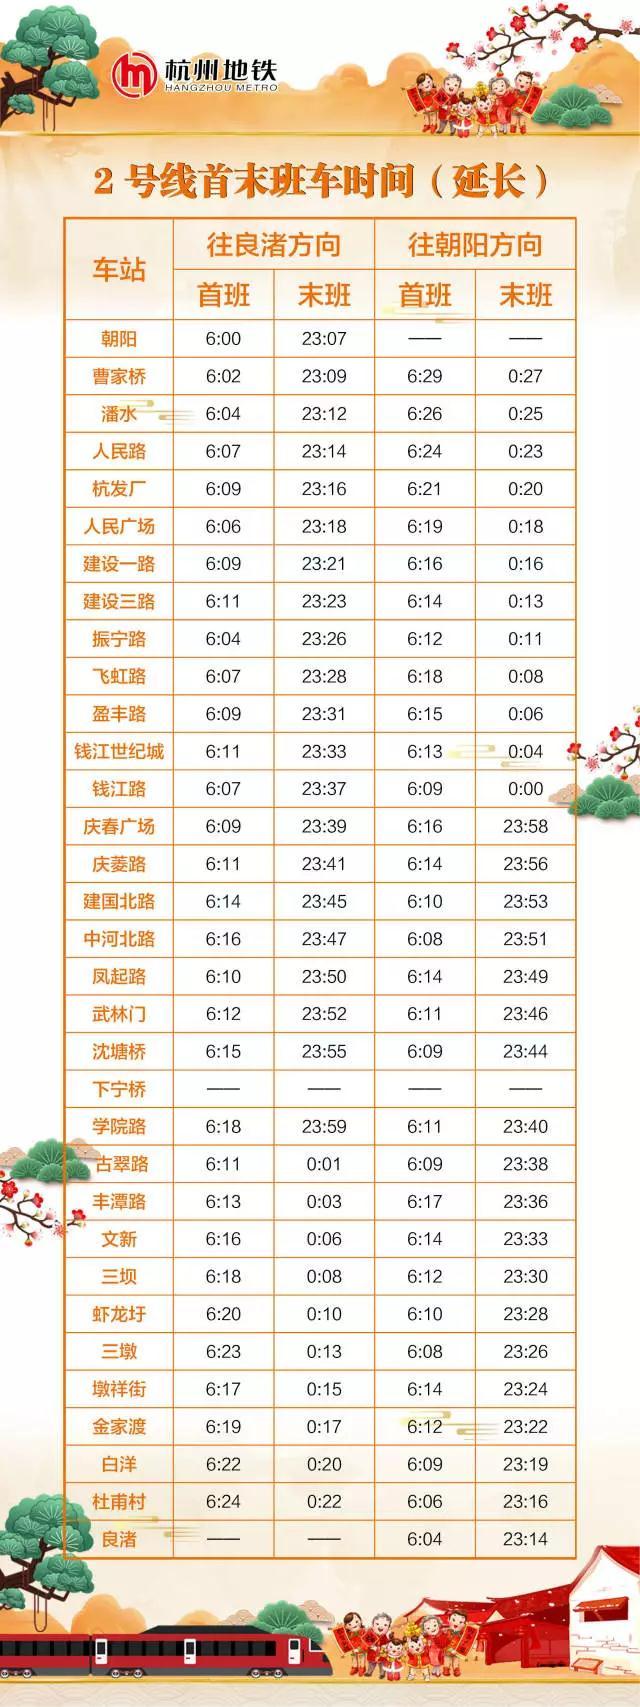 春运期间杭州地铁将延长运营 运营时刻表看这里